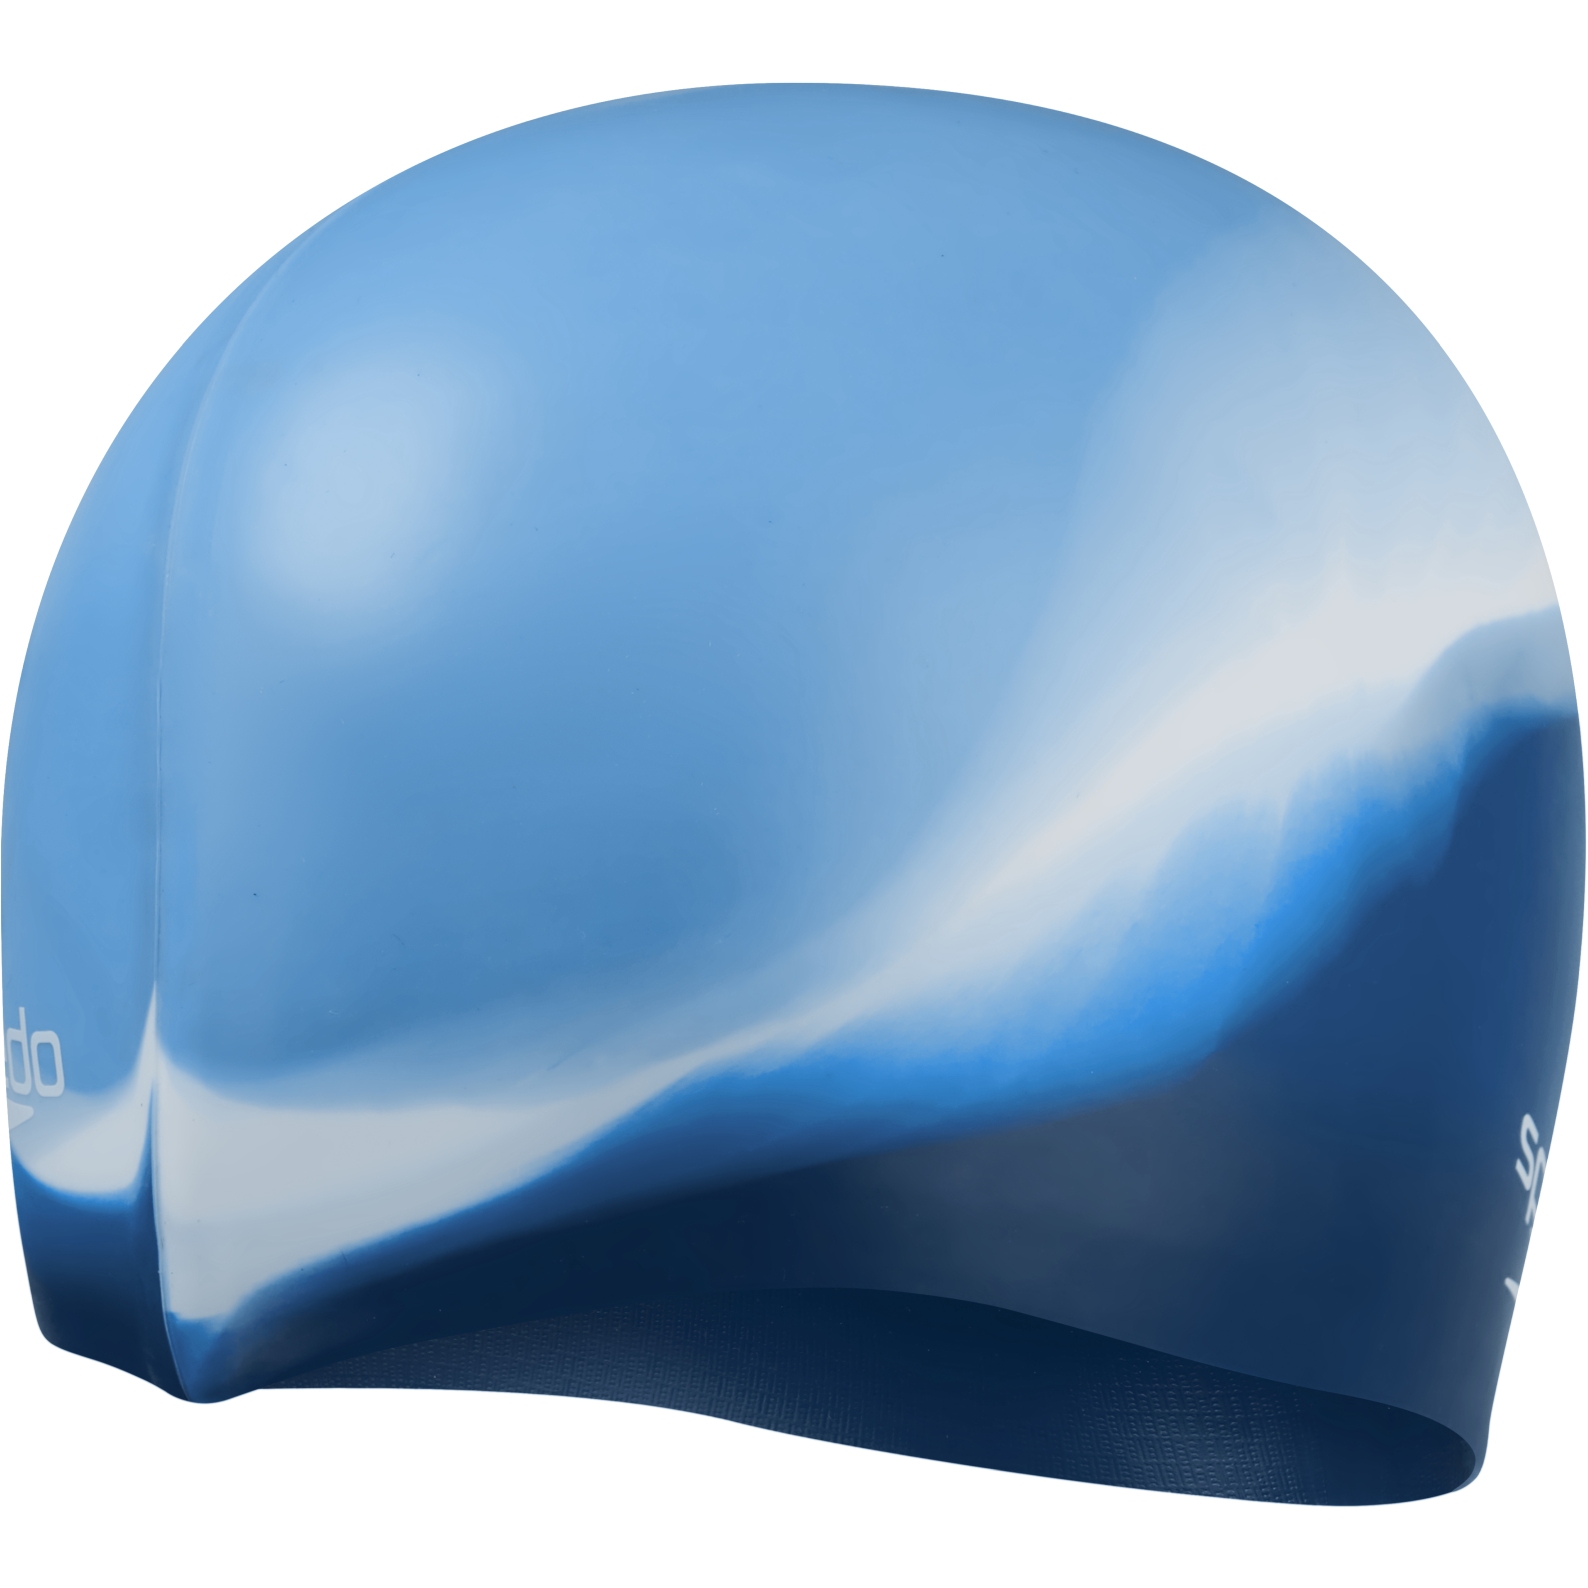 Immagine prodotto da Speedo Cuffia Nuoto - Multi Colour - blissful blue/aegean blue/white